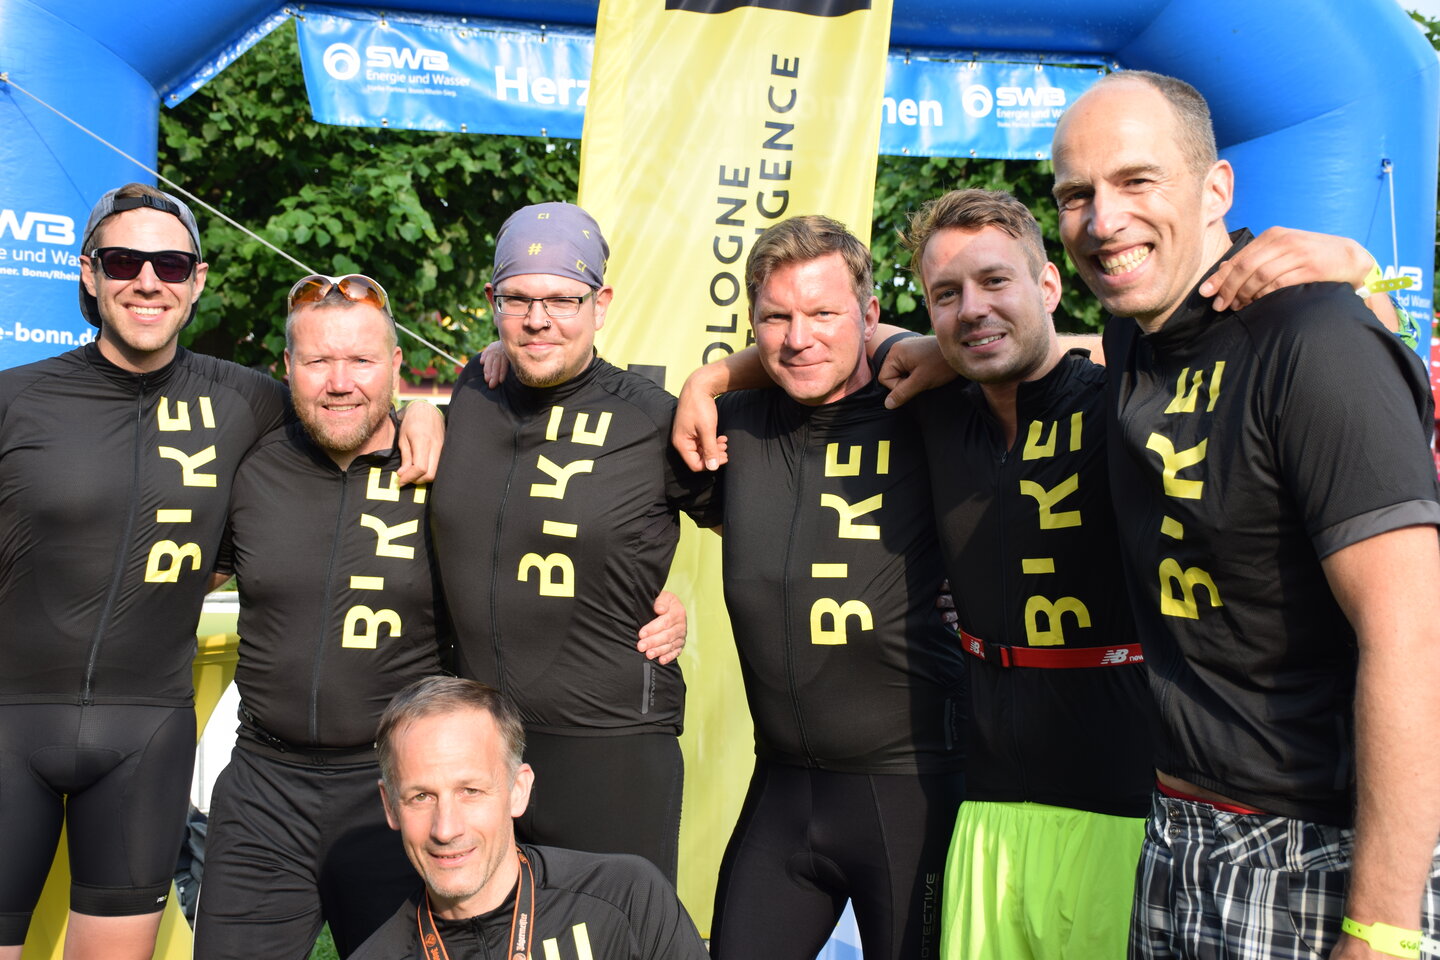 Unser Bike-Team posiert nach getaner Arbeit, unter anderem Benjamin Schiemann, Timo Coutura und Kunden